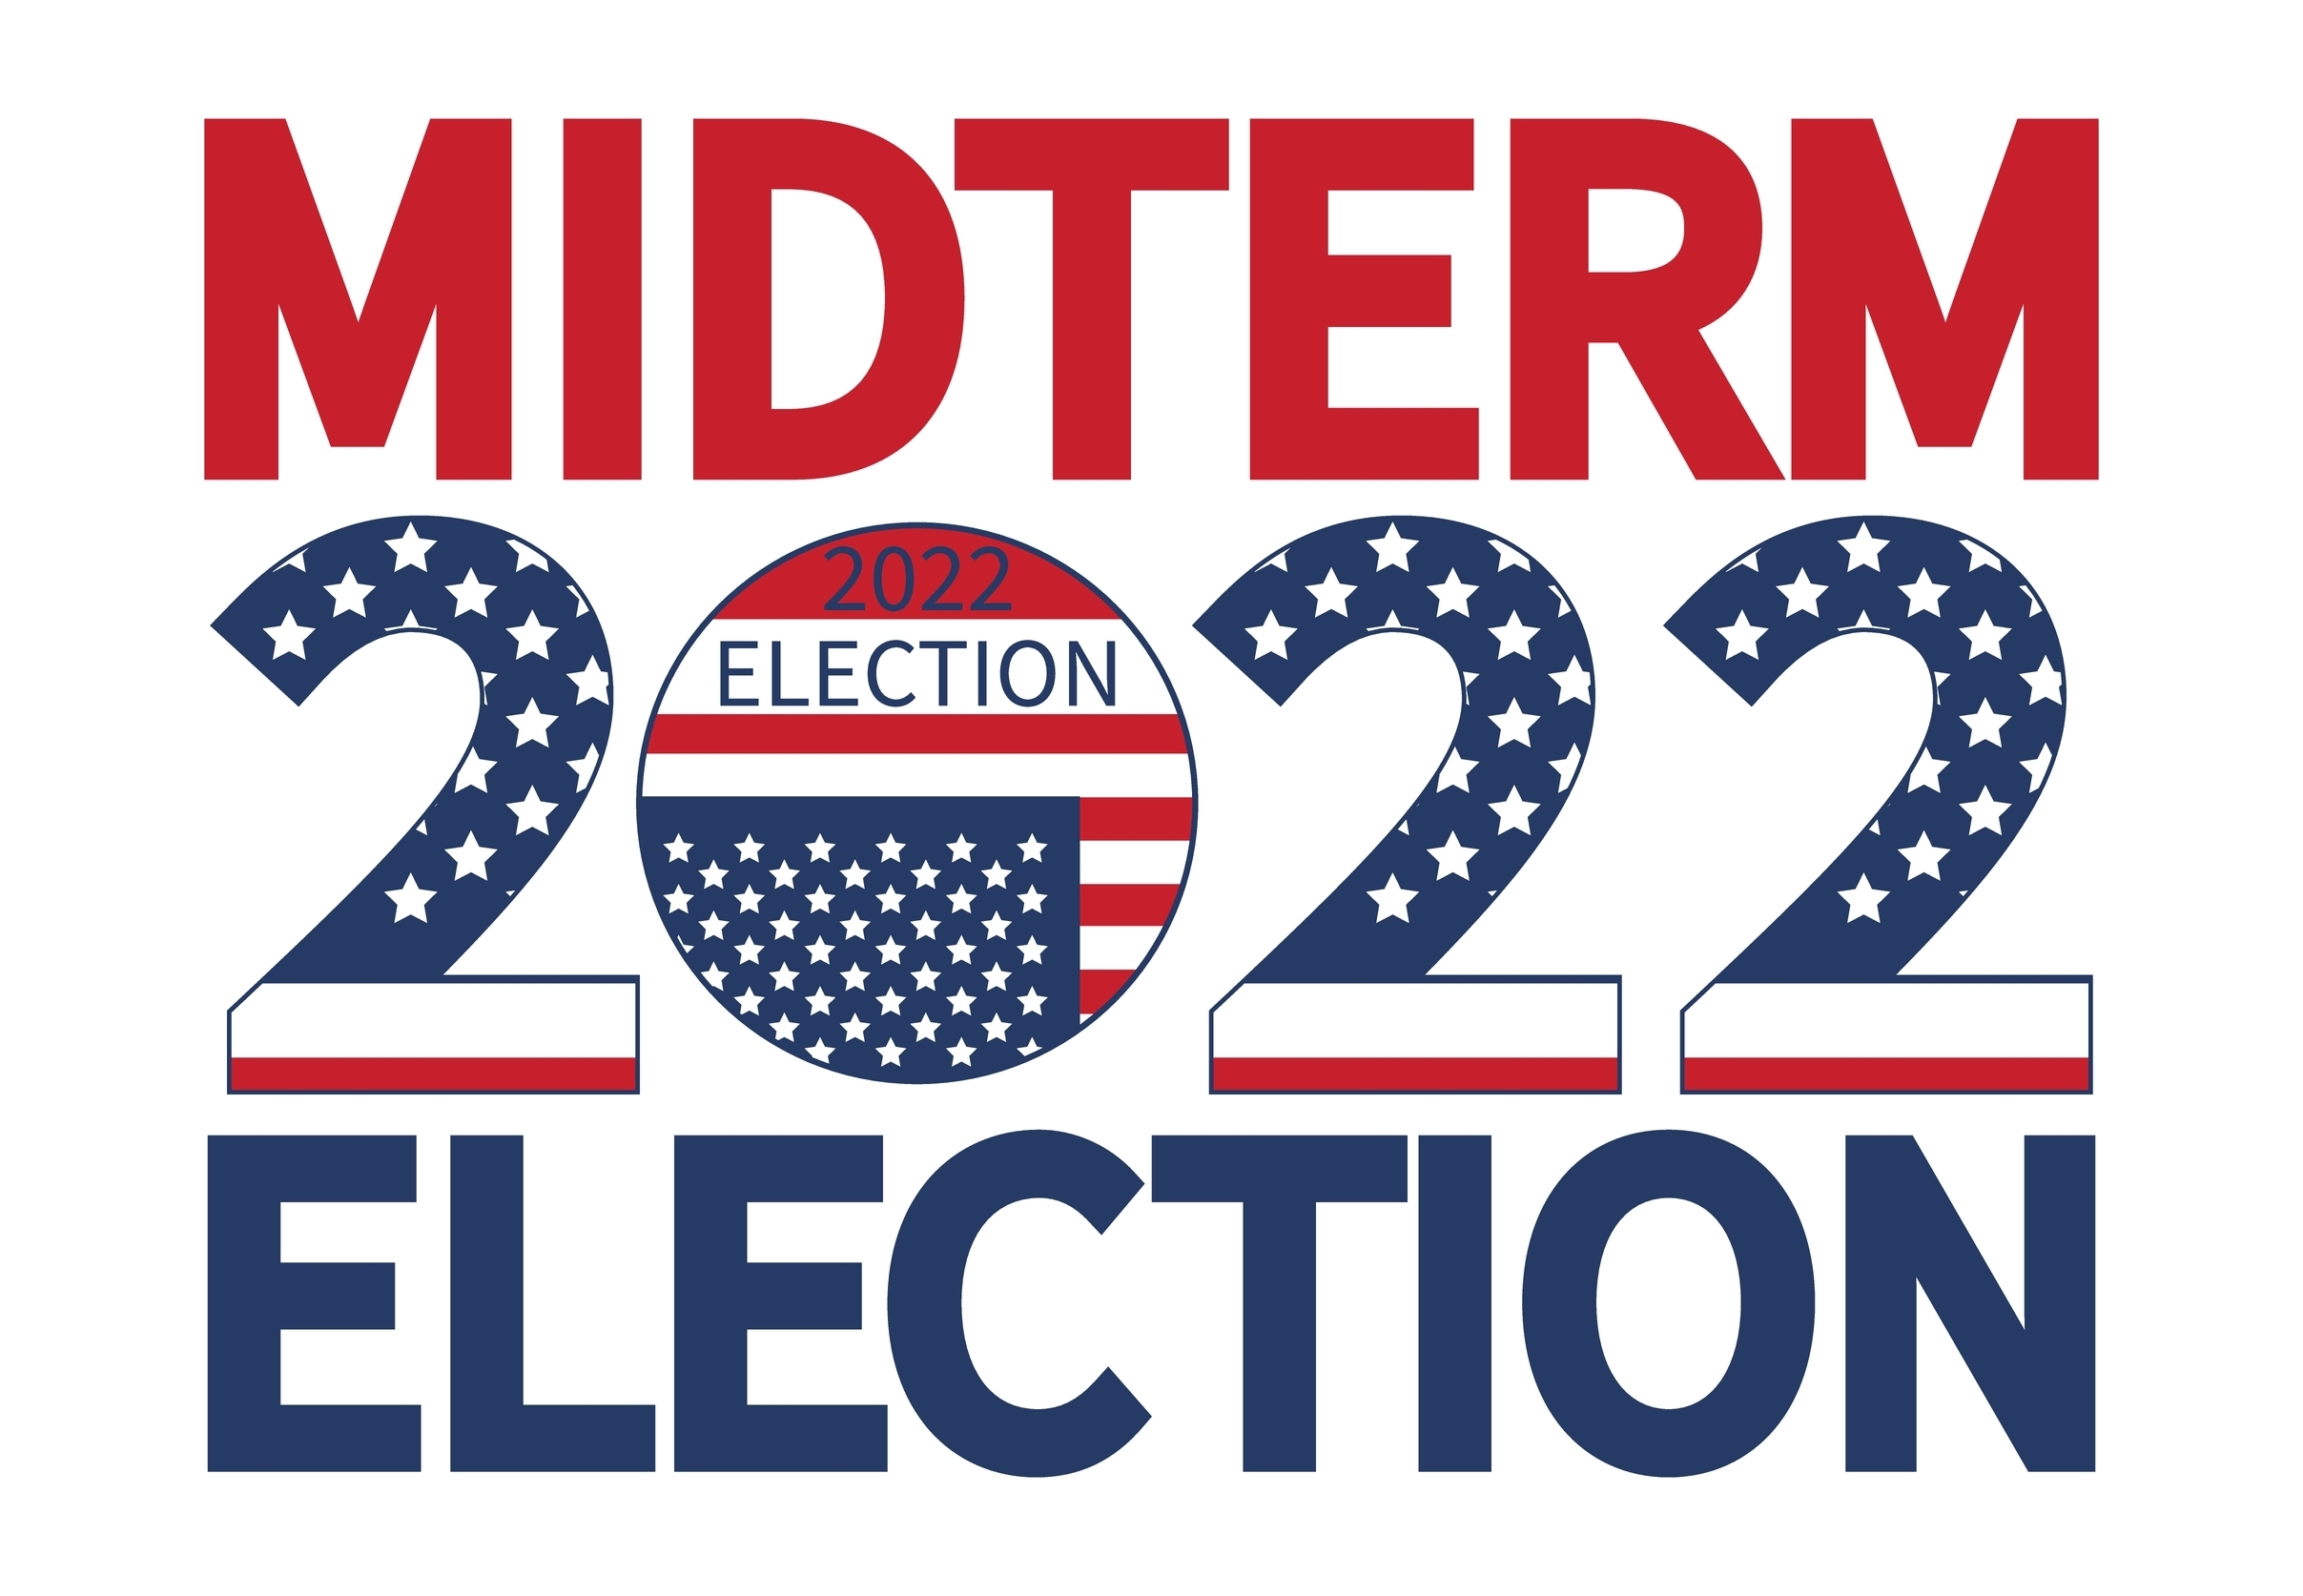 Midterm elections americane: che cosa potrebbe succedere ora?